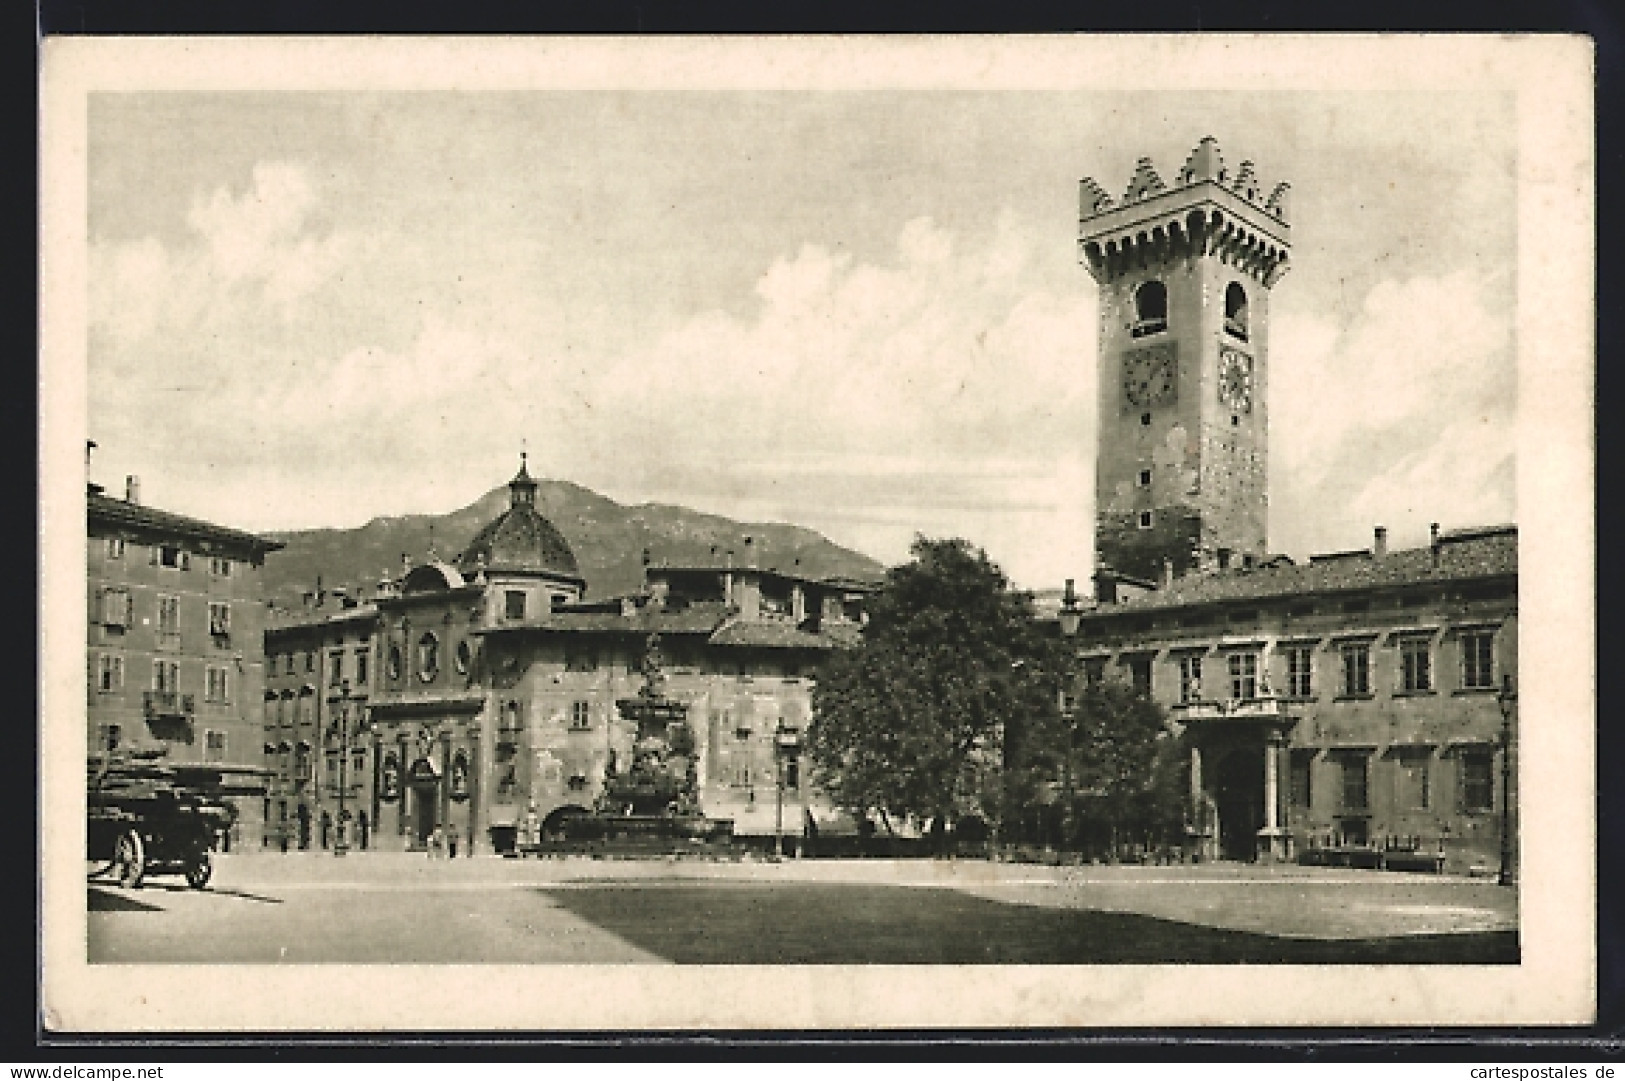 Cartolina Trento, Piazza Duomo, Torre Granda, Casa Rella, Palazzo Pretorio  - Trento